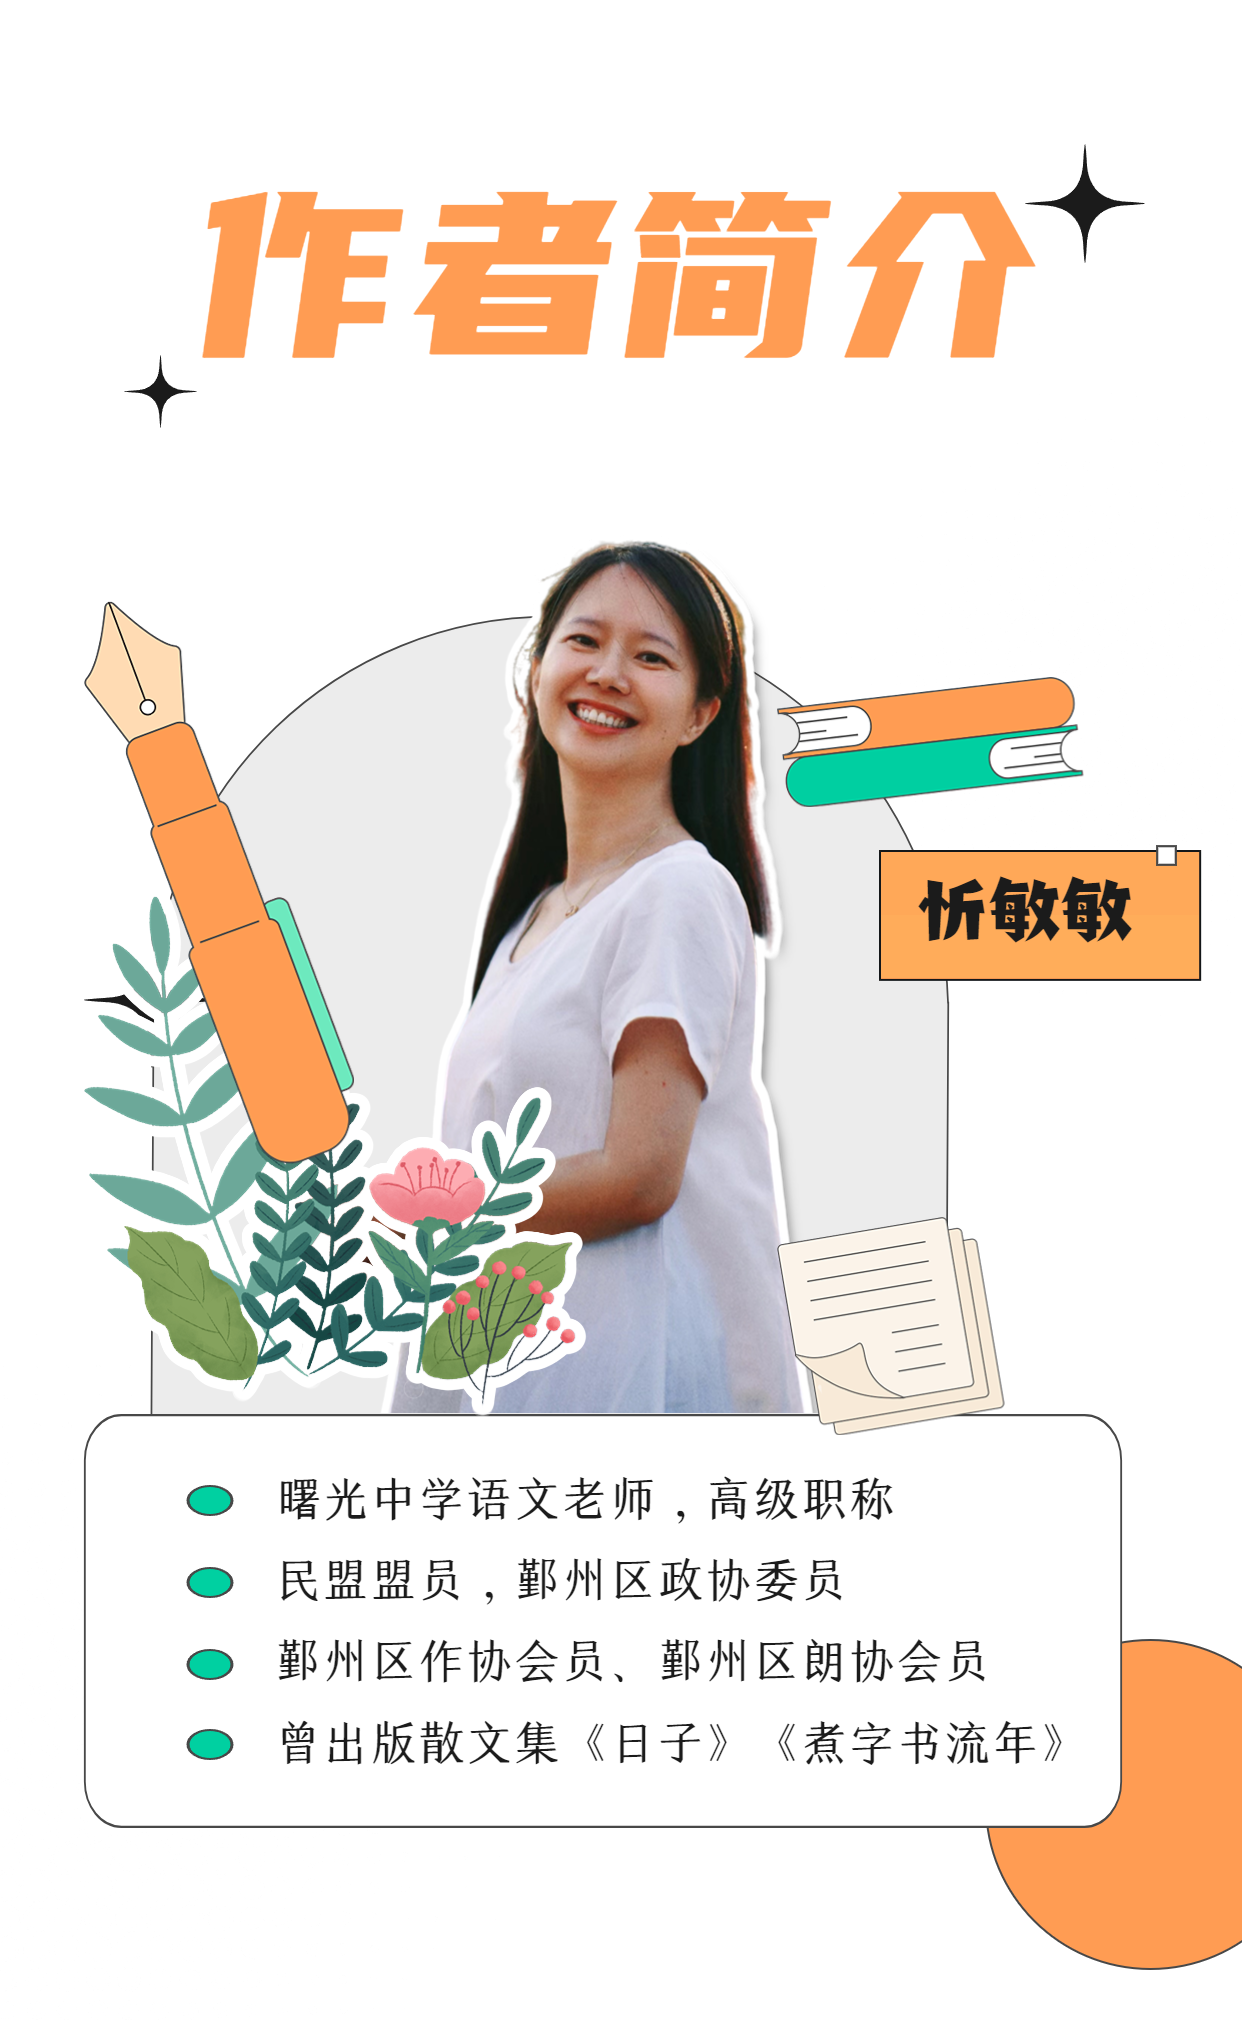 考研雅思英语冲刺直播课程海报 (1)_看图王.png